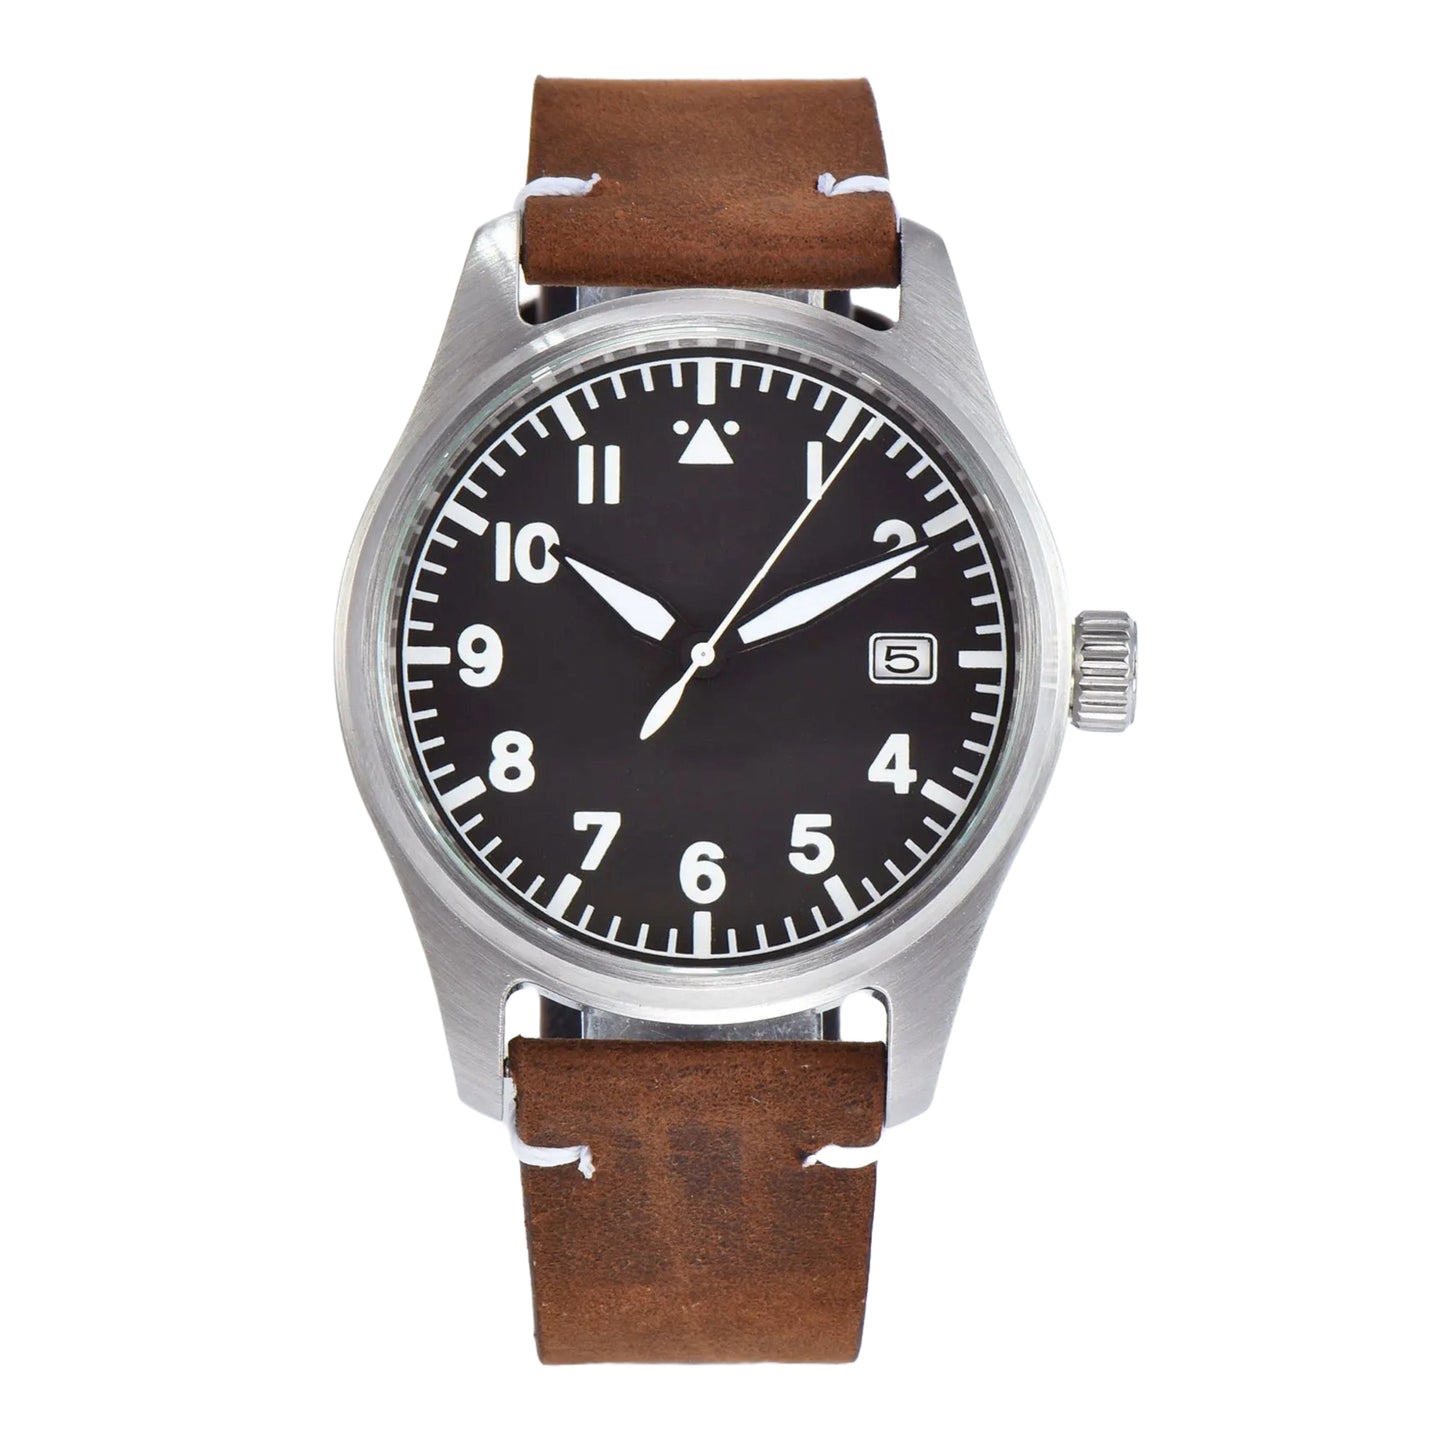 Type a flieger watch